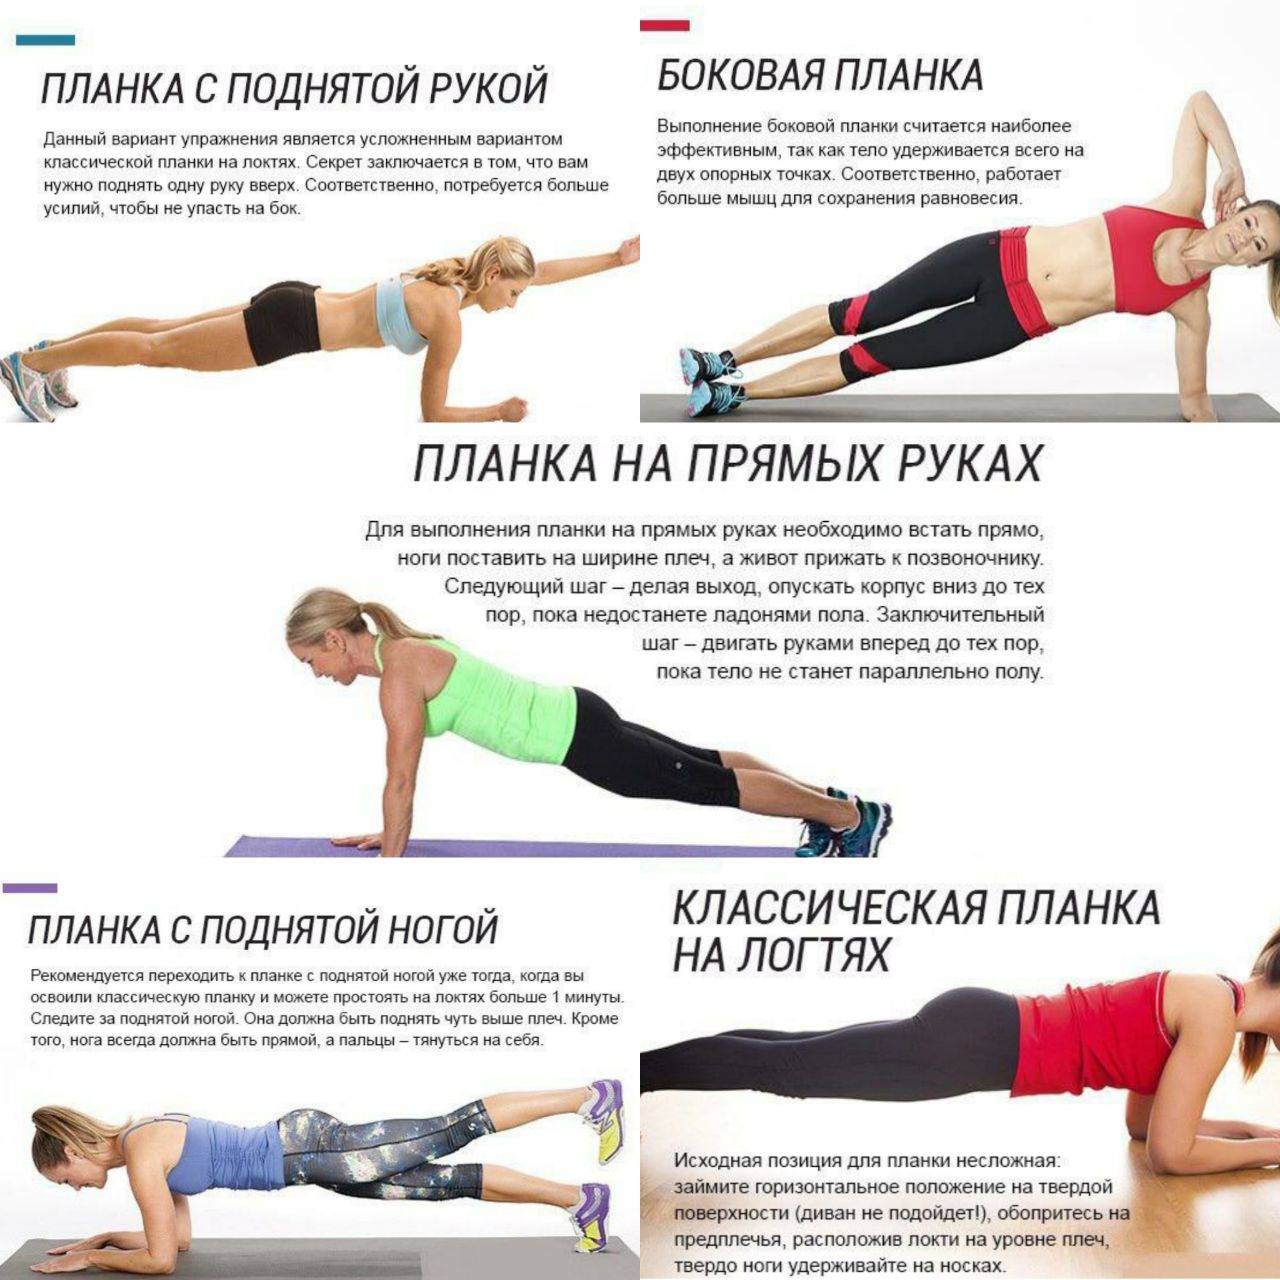 Планка для похудения: польза и вред, как правильно делать, таблица для начинающих на 30 дней | sadikufa.ru